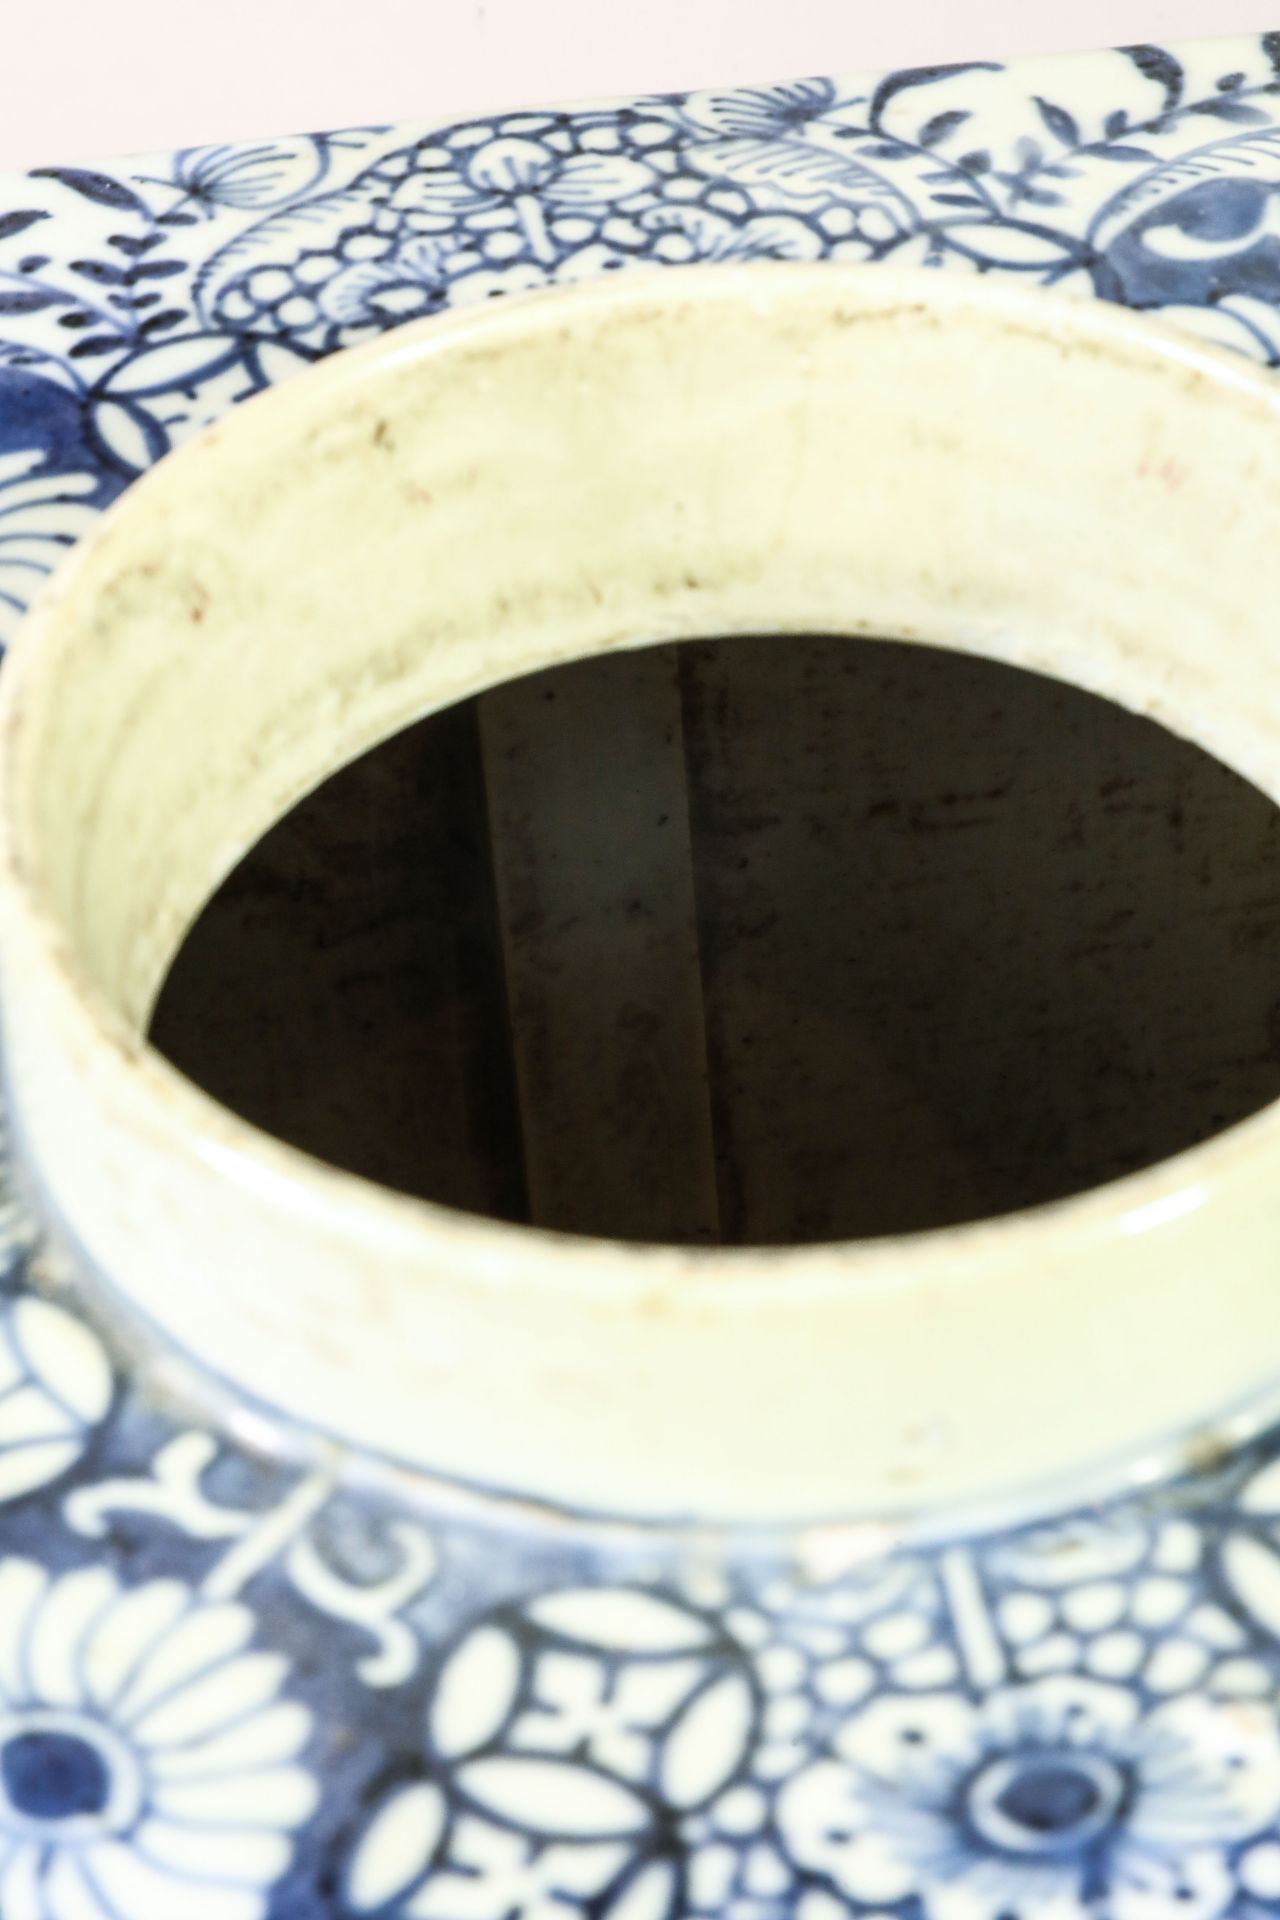 Suite de neuf pots à thé quadrangulaire en porcelaine blanche décoré en bleu sous couverte de - Image 19 of 47